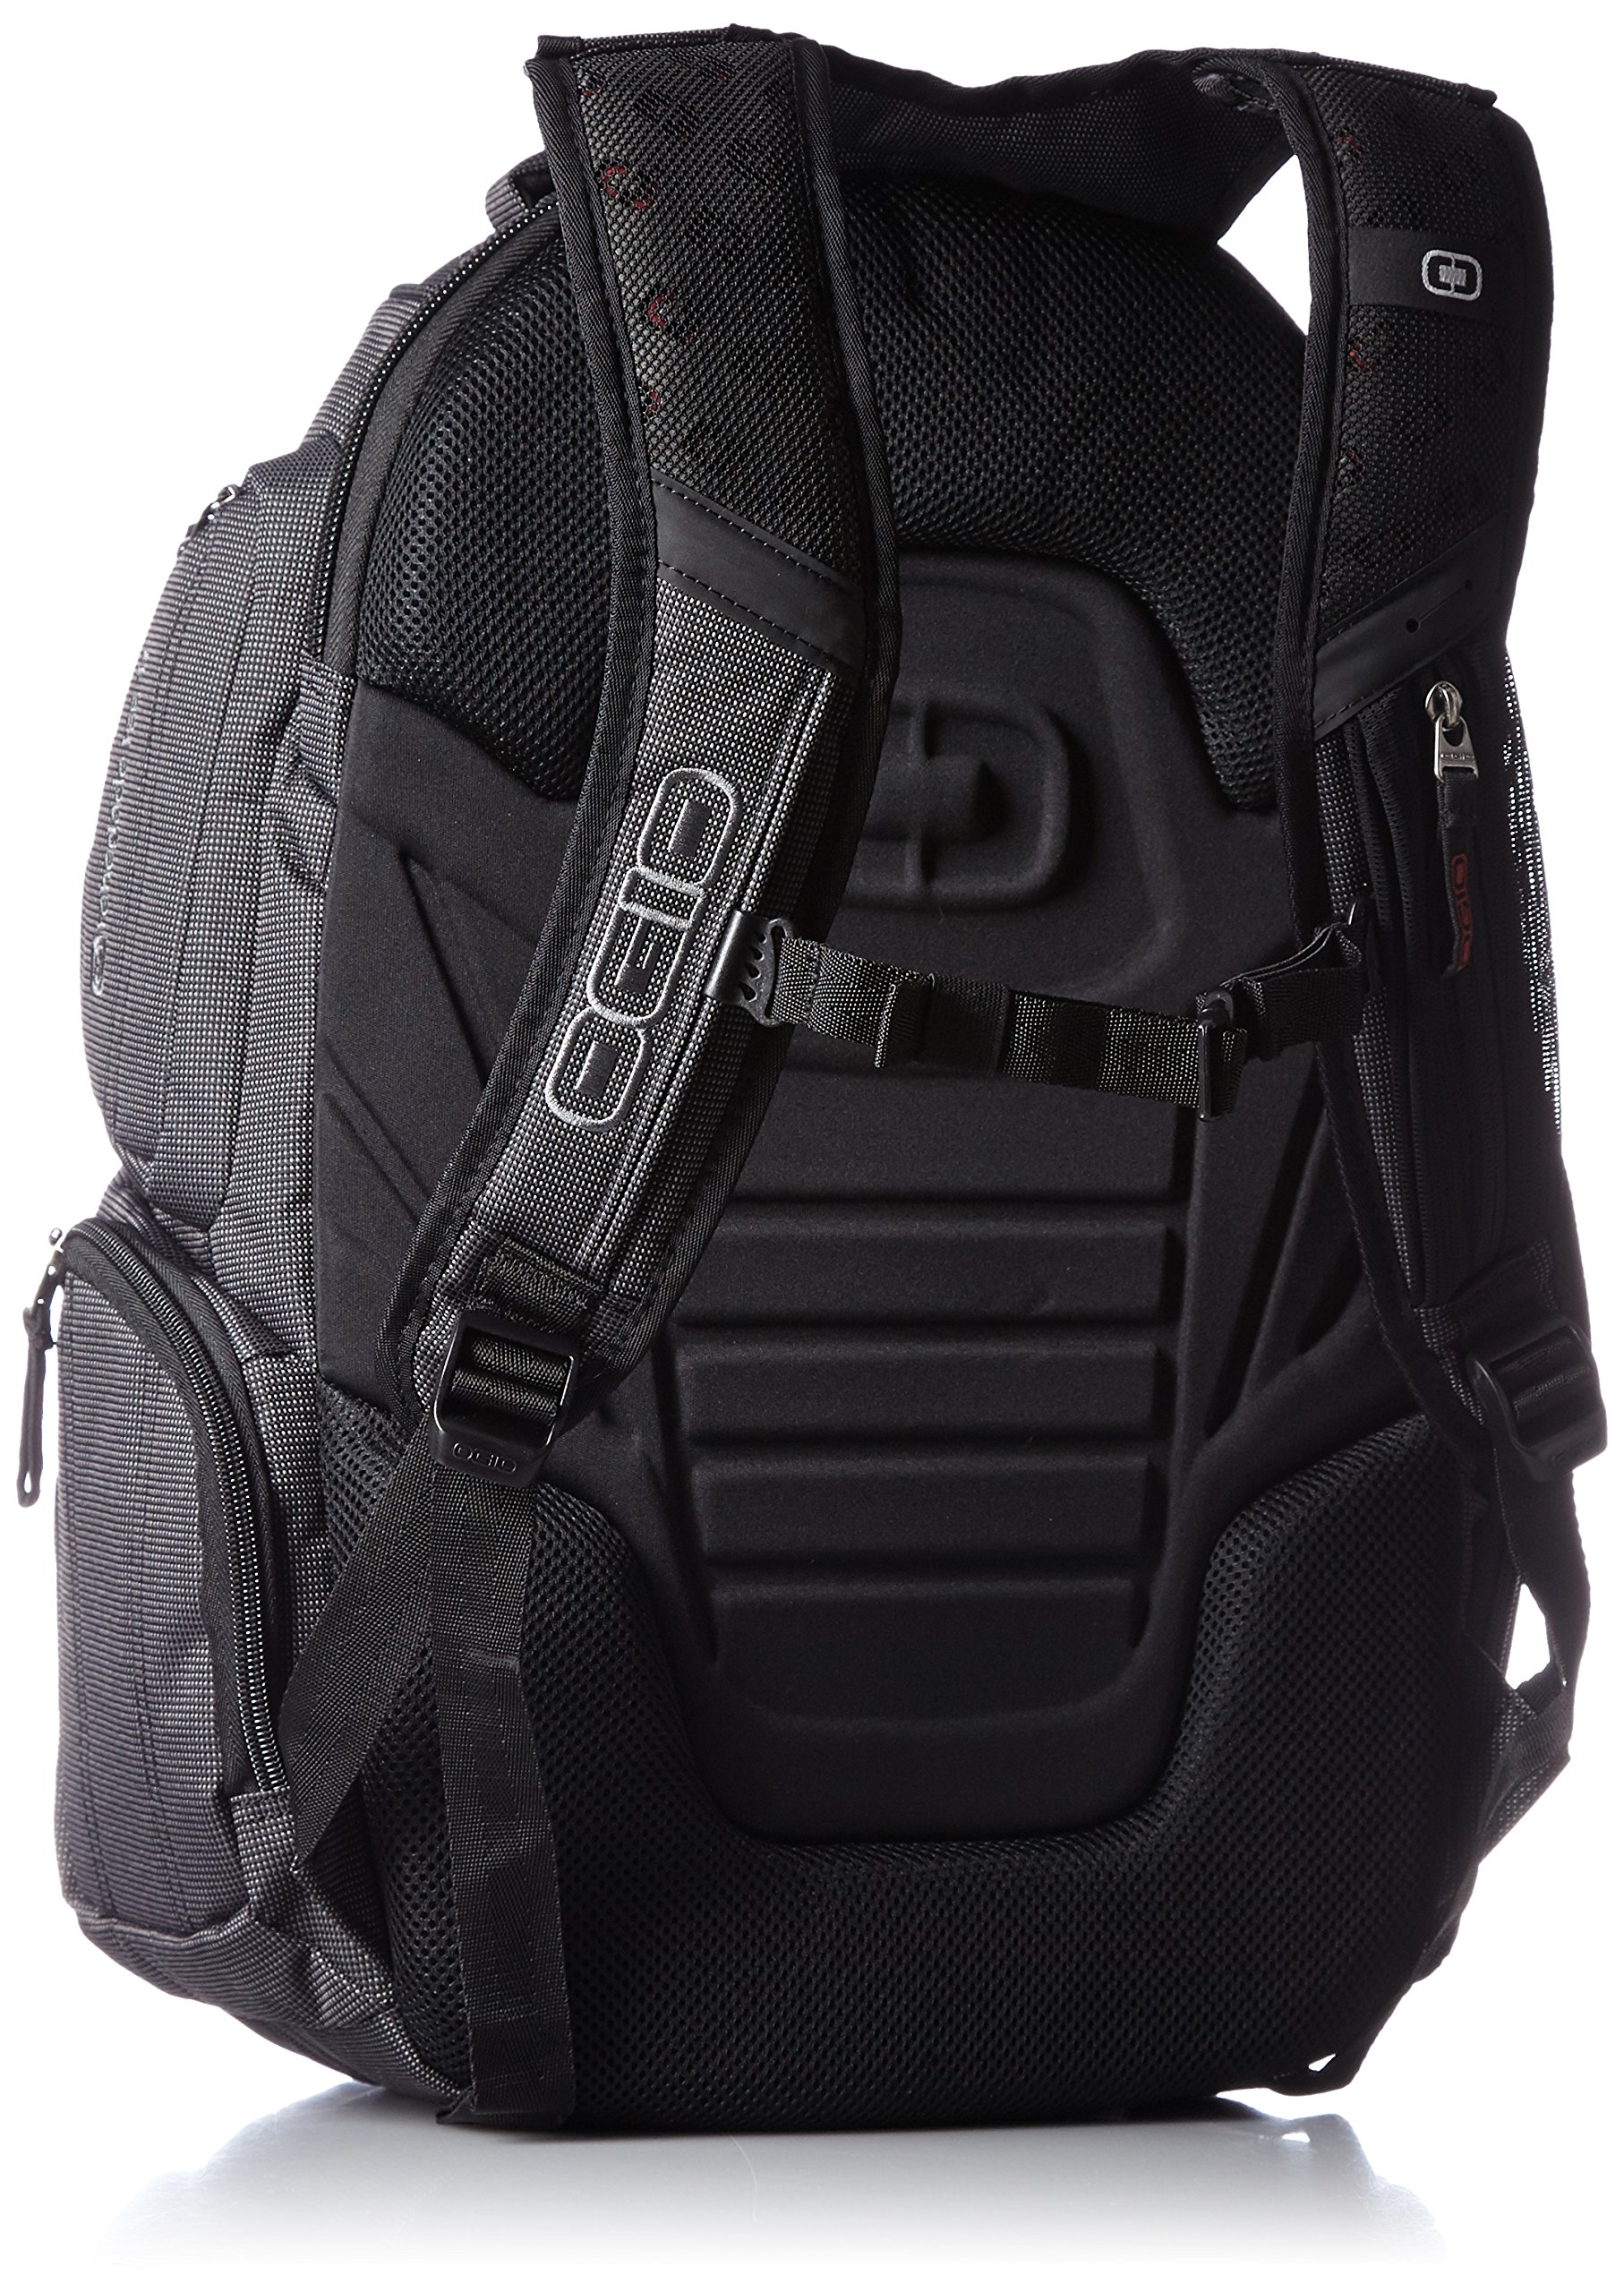 OGIO Renegade Backpack (Renegade , Black Pindot), Large